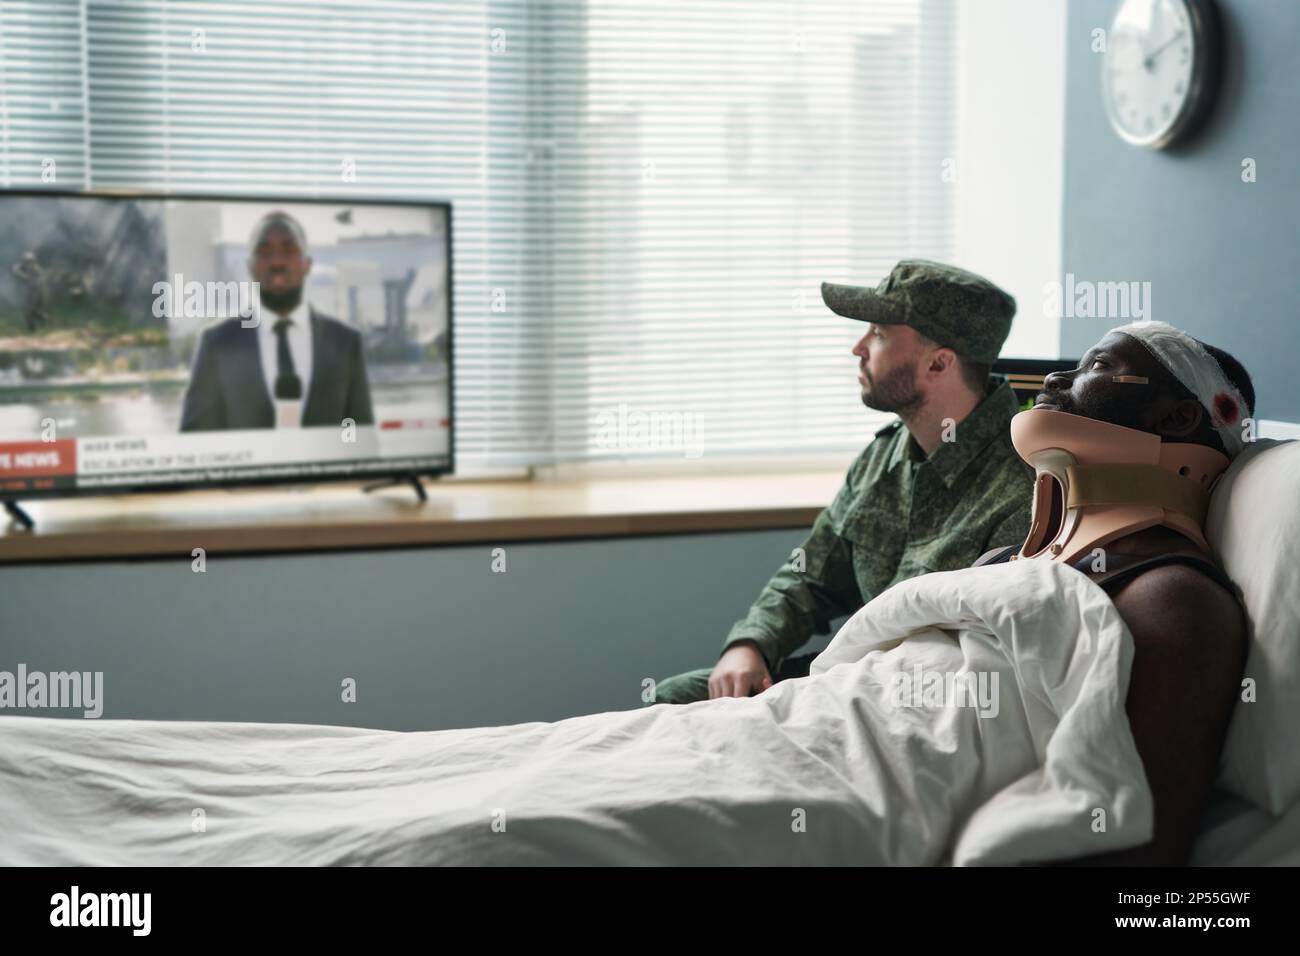 Seitenansicht des verletzten Mannes und seines Freundes in Militäruniform, der Nachrichten im fernsehen ansieht, während er vor dem Bildschirm in der Krankenhausabteilung sitzt Stockfoto